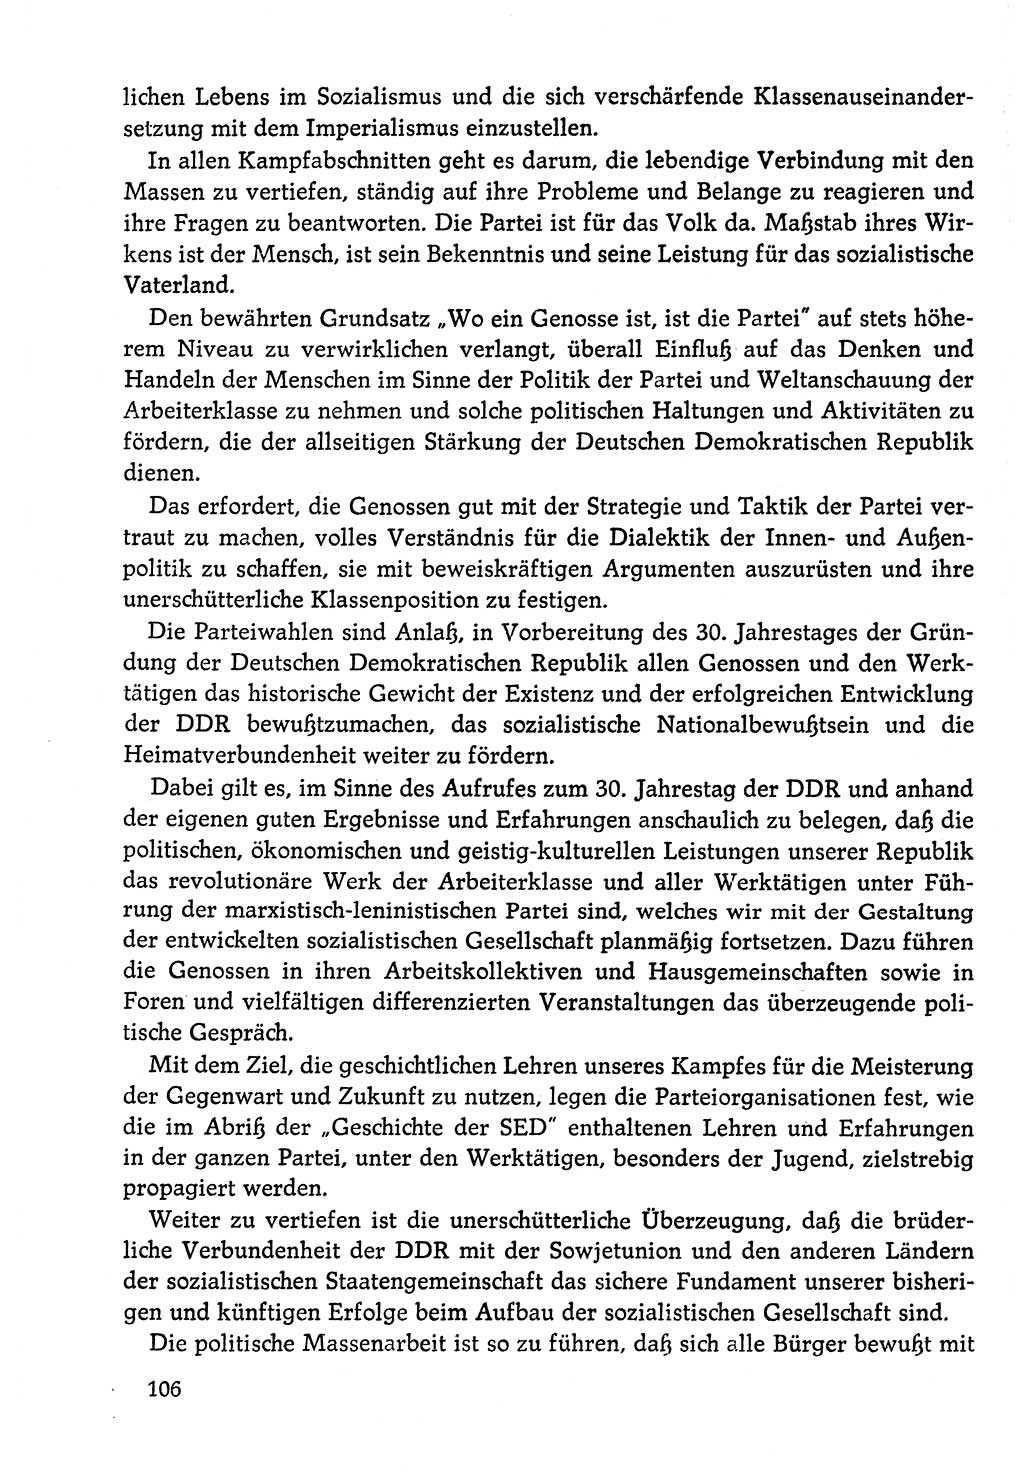 Dokumente der Sozialistischen Einheitspartei Deutschlands (SED) [Deutsche Demokratische Republik (DDR)] 1978-1979, Seite 106 (Dok. SED DDR 1978-1979, S. 106)